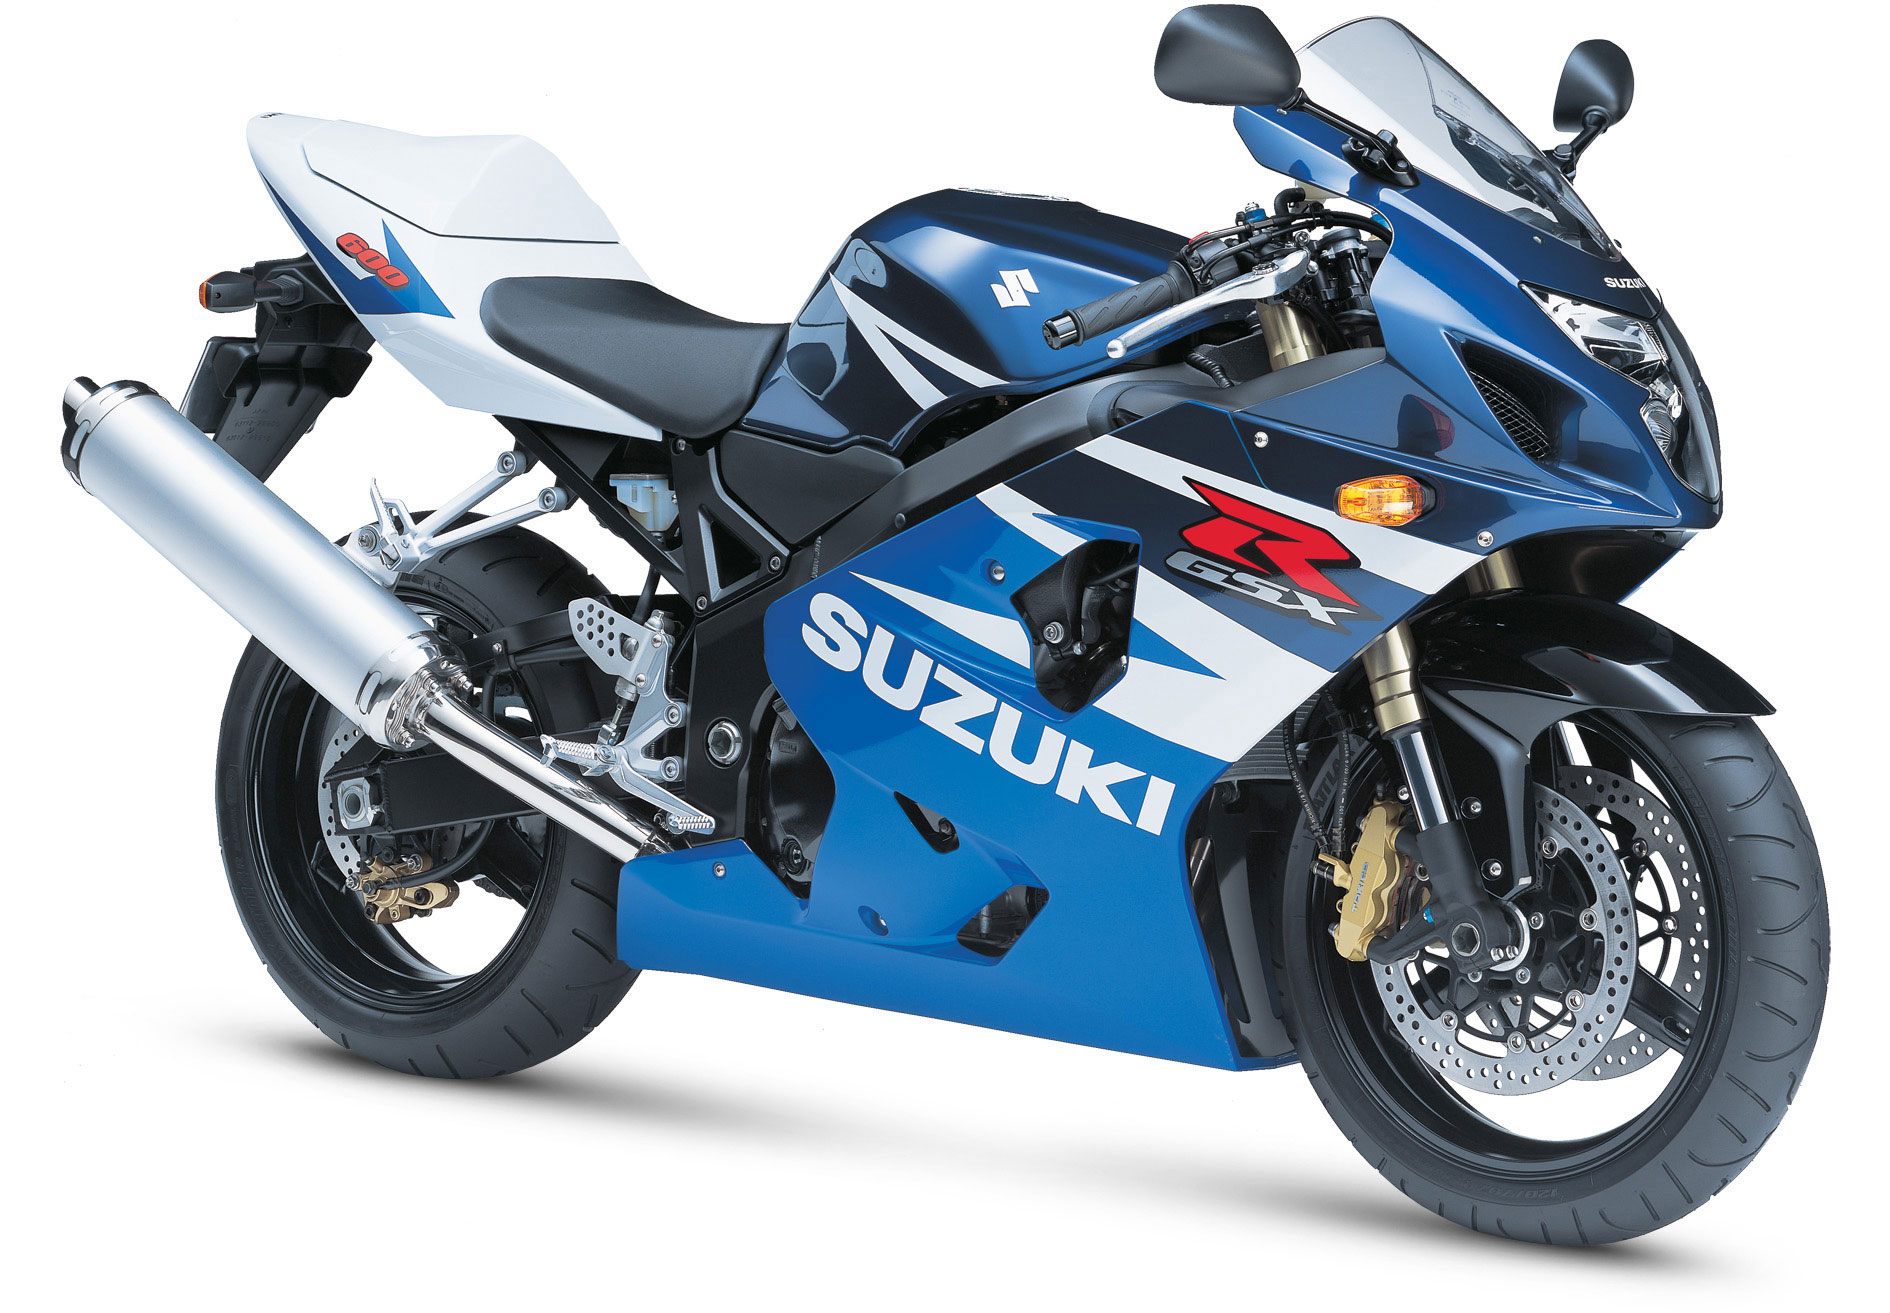 2004 Suzuki GSX-R600 Review